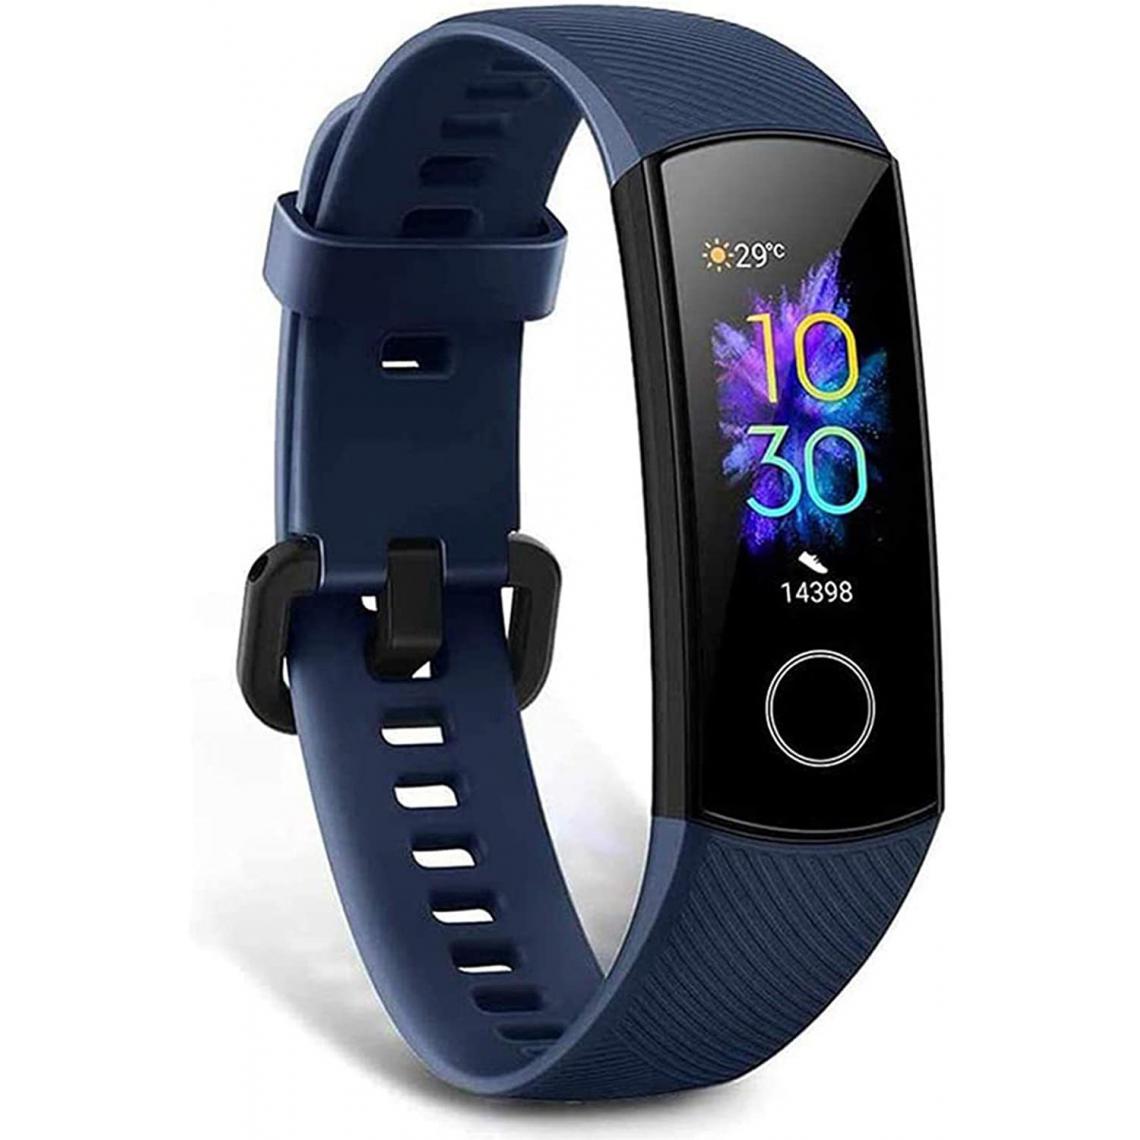 Chrono - HONOR Band 5 Montre Connectée Podometre Cardio Bracelet Connecté avec SpO2 et Mesure de la Fréquence Cardiaque Montre Intelligente Sport Running Sommeil Homme Femme Smartwatch Android iOS(Bleu) - Montre connectée